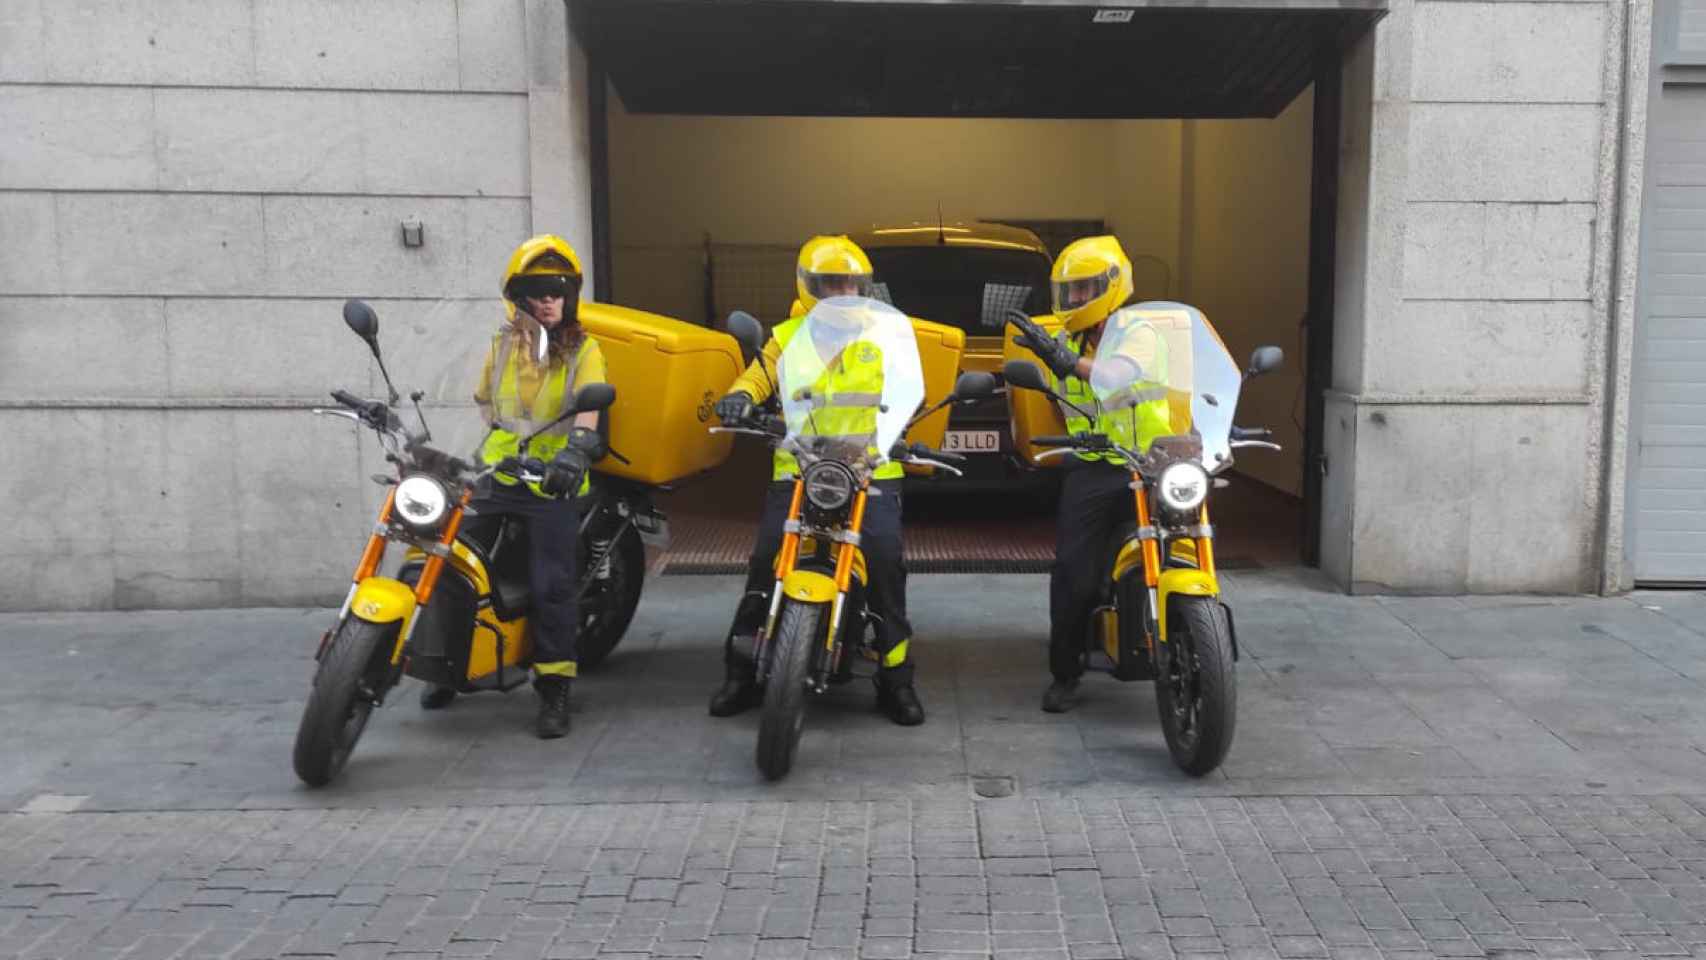 Correos estrena 3 nuevas motos eléctricas en Medina del Campo